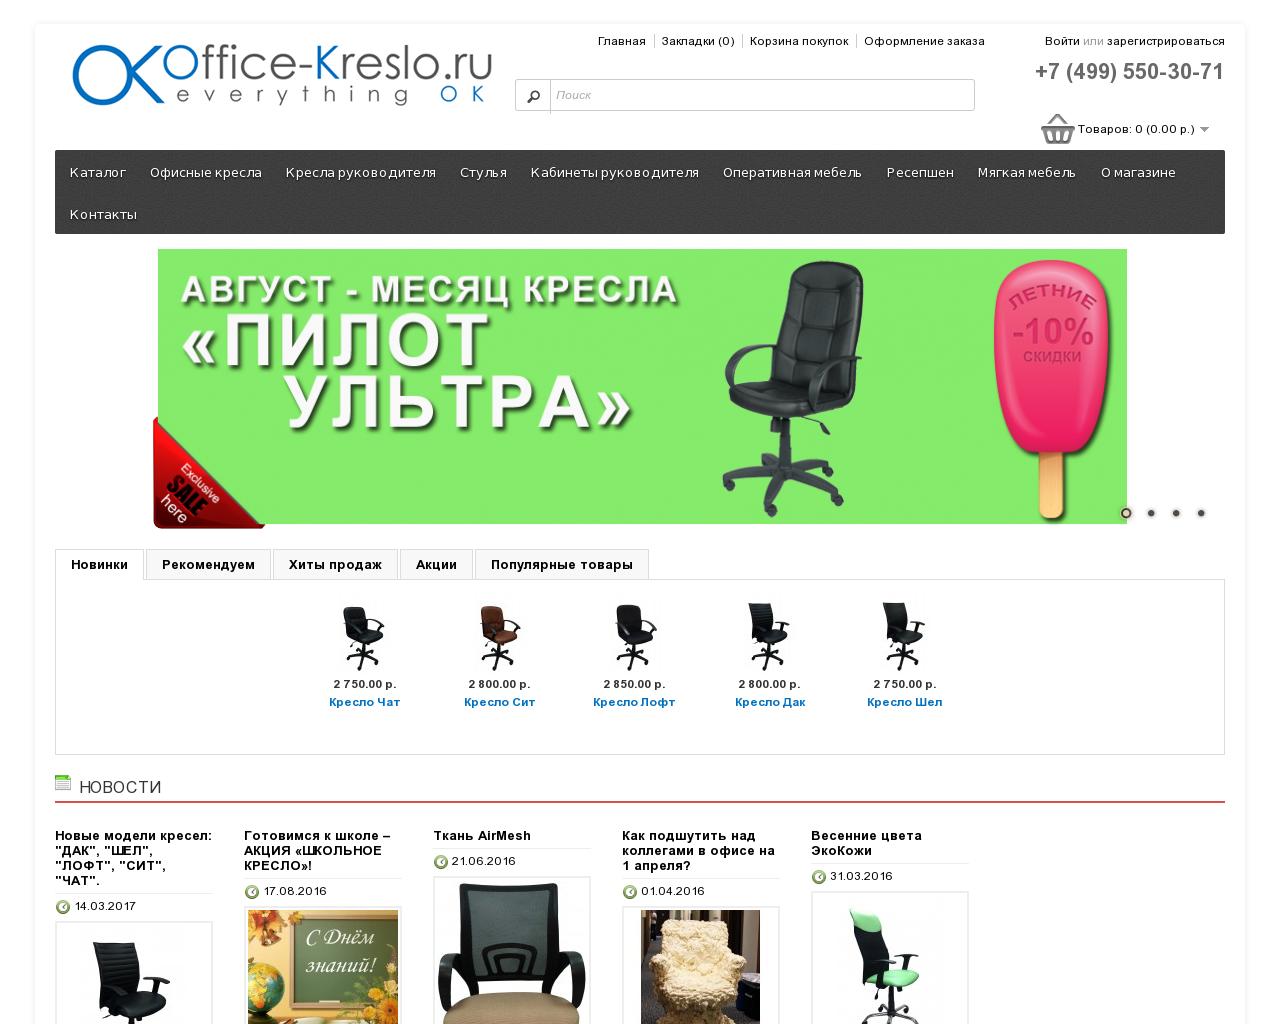 Изображение сайта office-kreslo.ru в разрешении 1280x1024